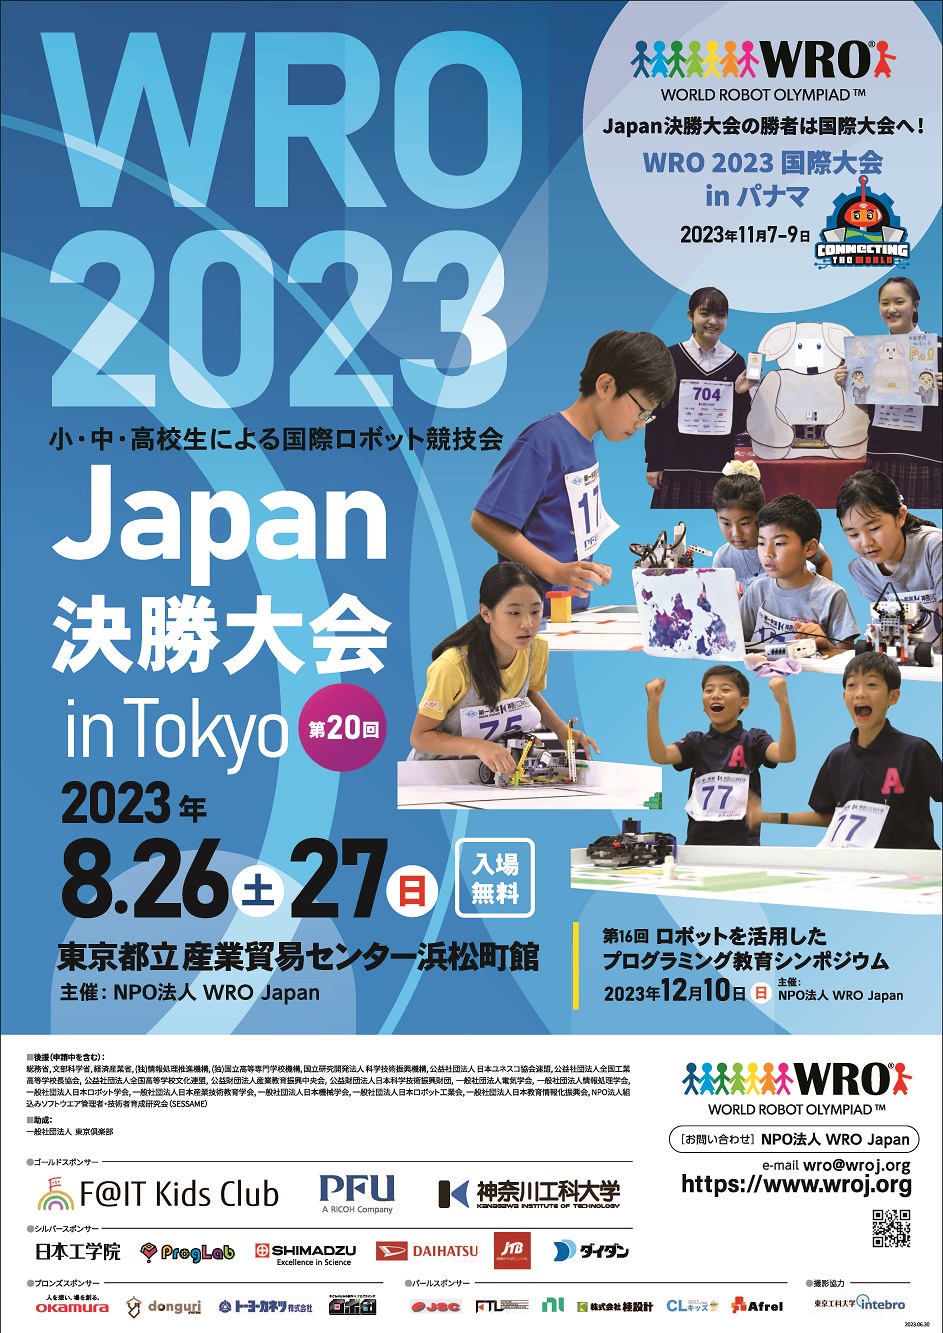 8月27日東京で行われたWRO2023 Japan決勝